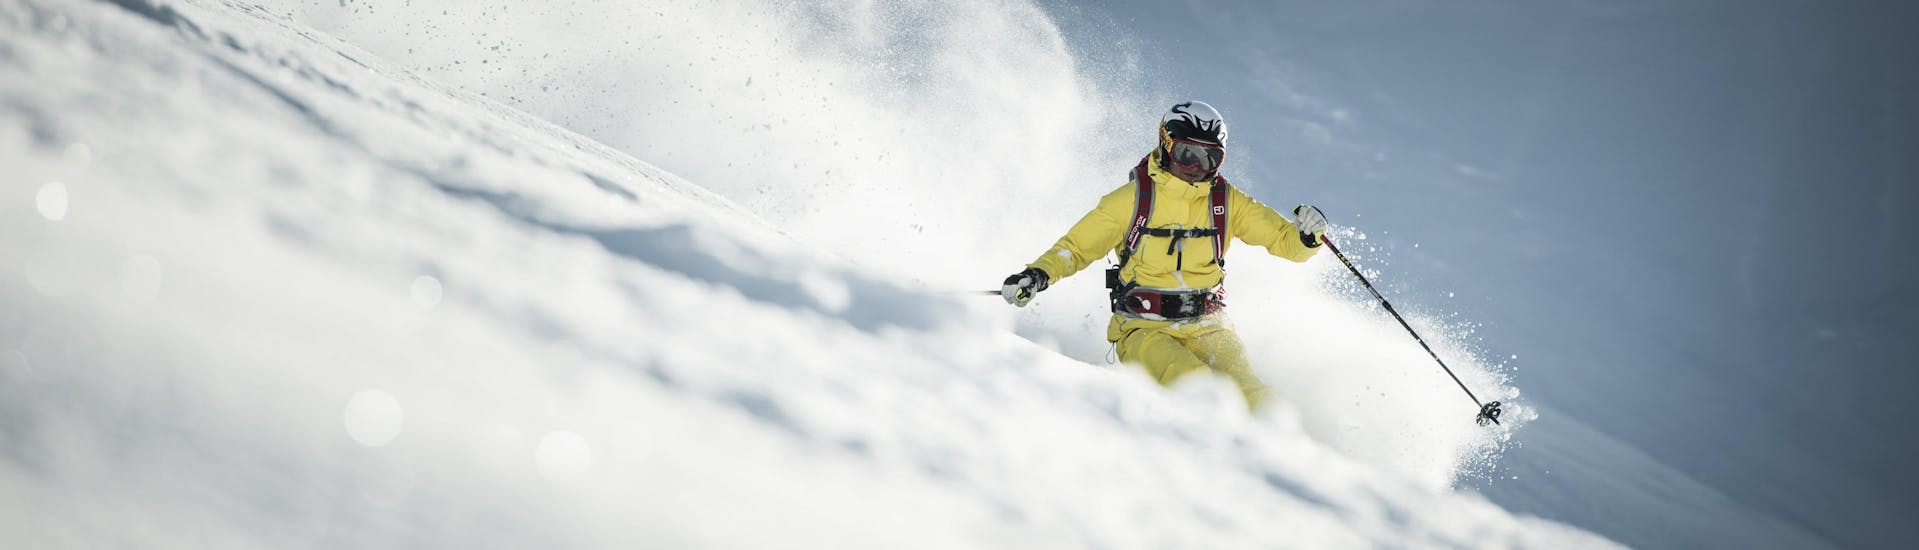 Uno sciatore si fa strada lungo una pista di neve non battuta durante le sue lezioni di sci fuori pista.